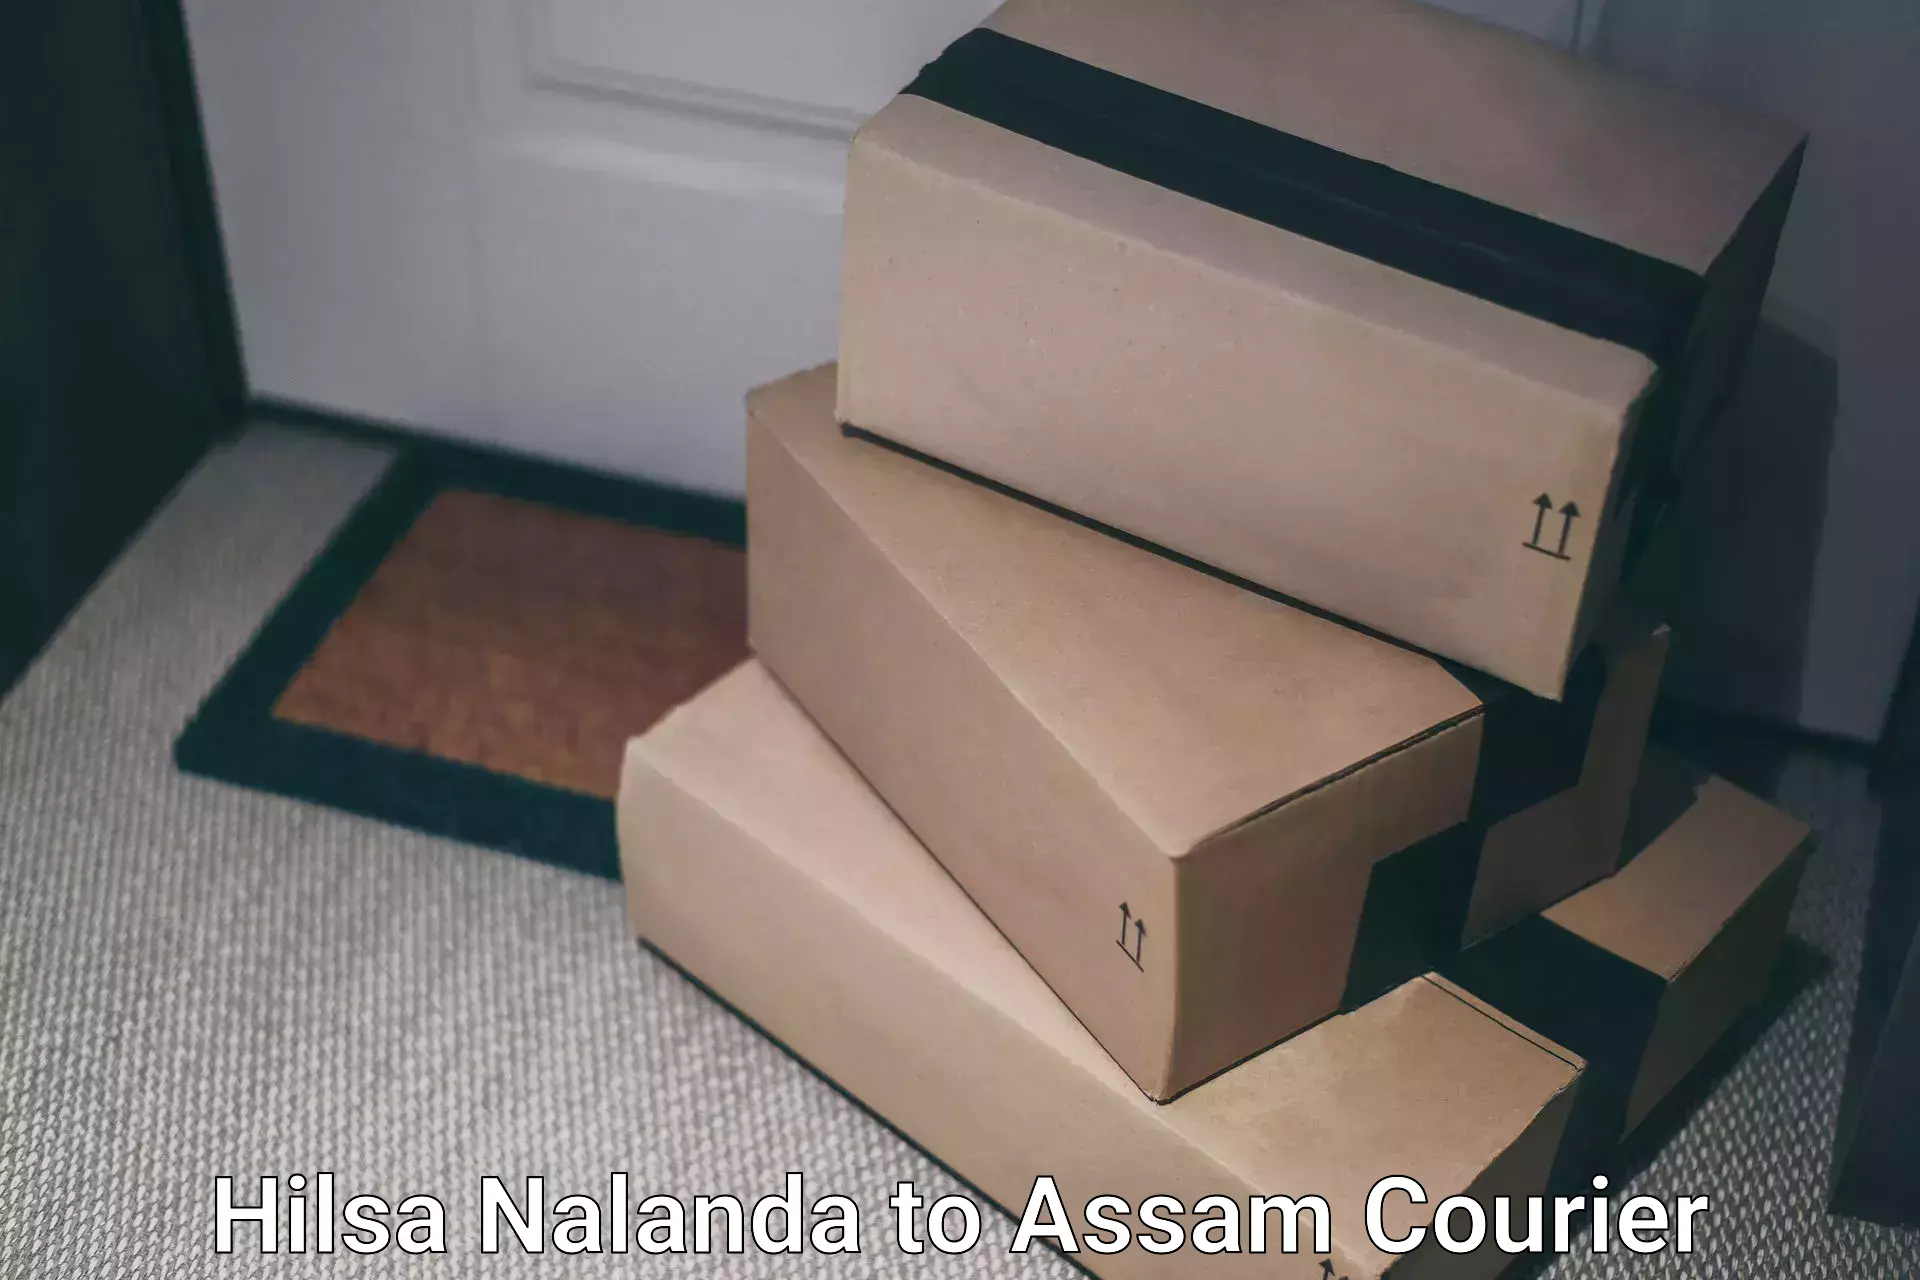 Speedy delivery service Hilsa Nalanda to Assam